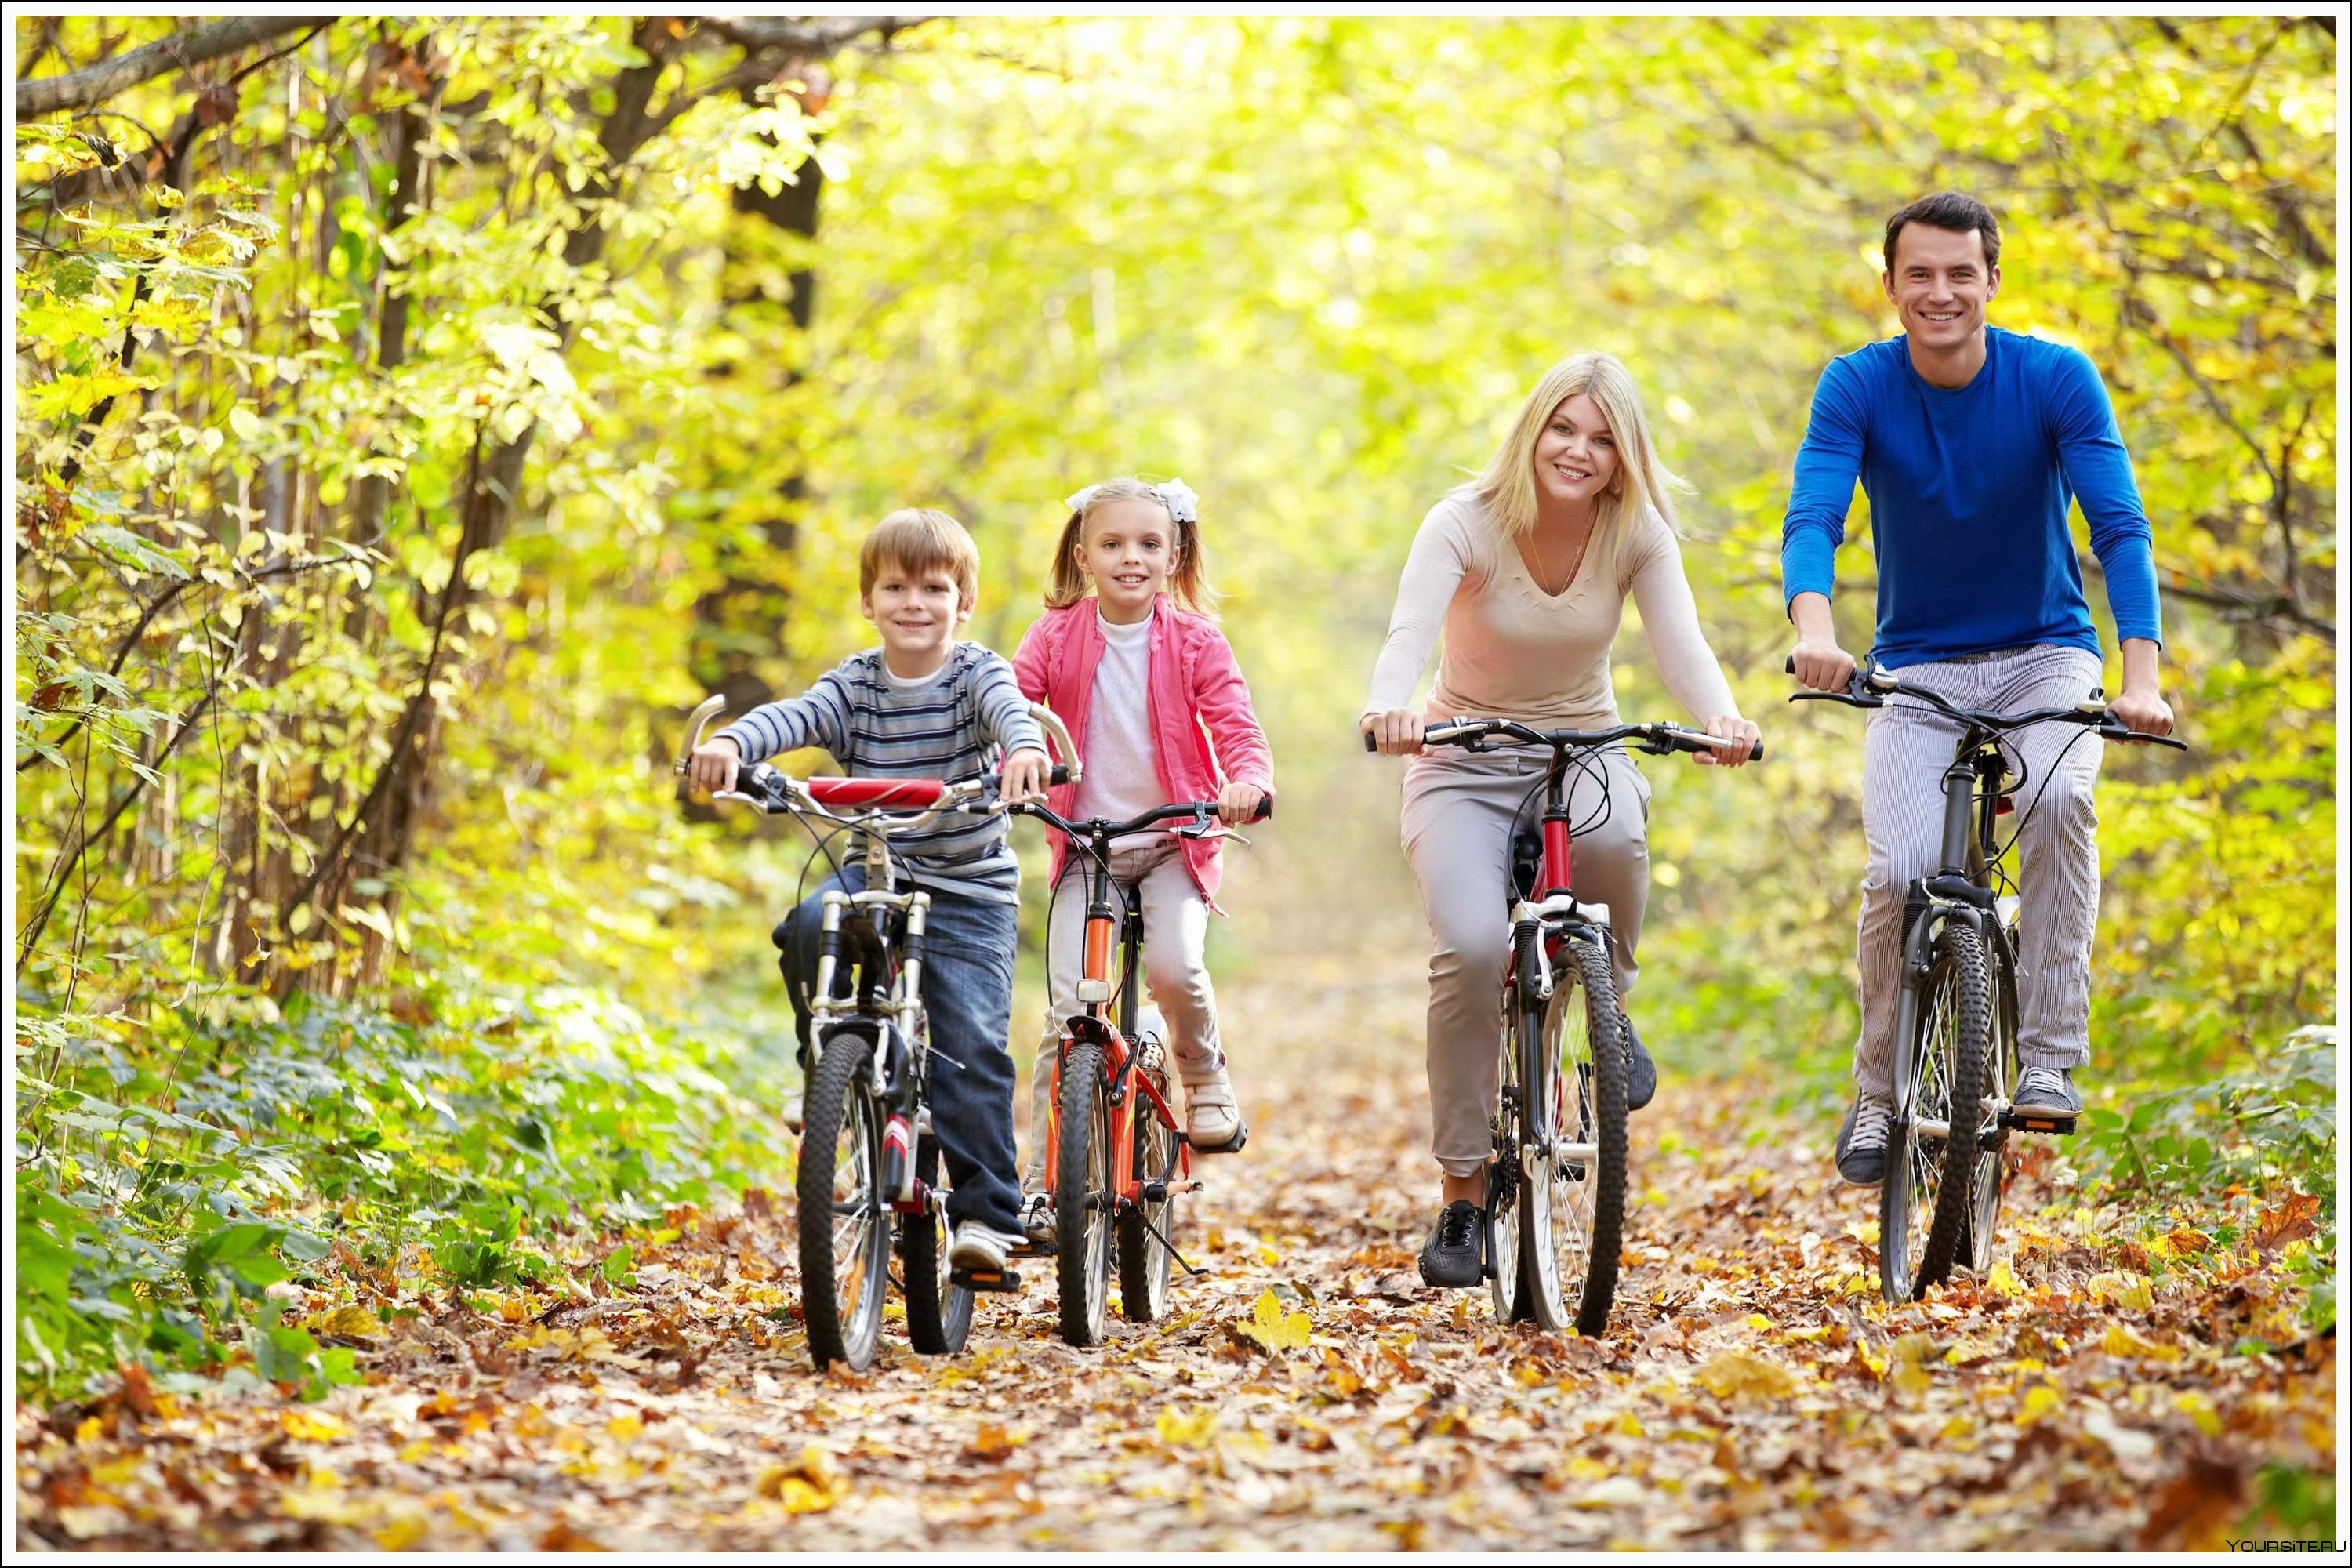 Человек на свежем воздухе. Прогулки на свежем воздухе. Семья на прогулке. Прогулка на природе. Семья на велосипедах.